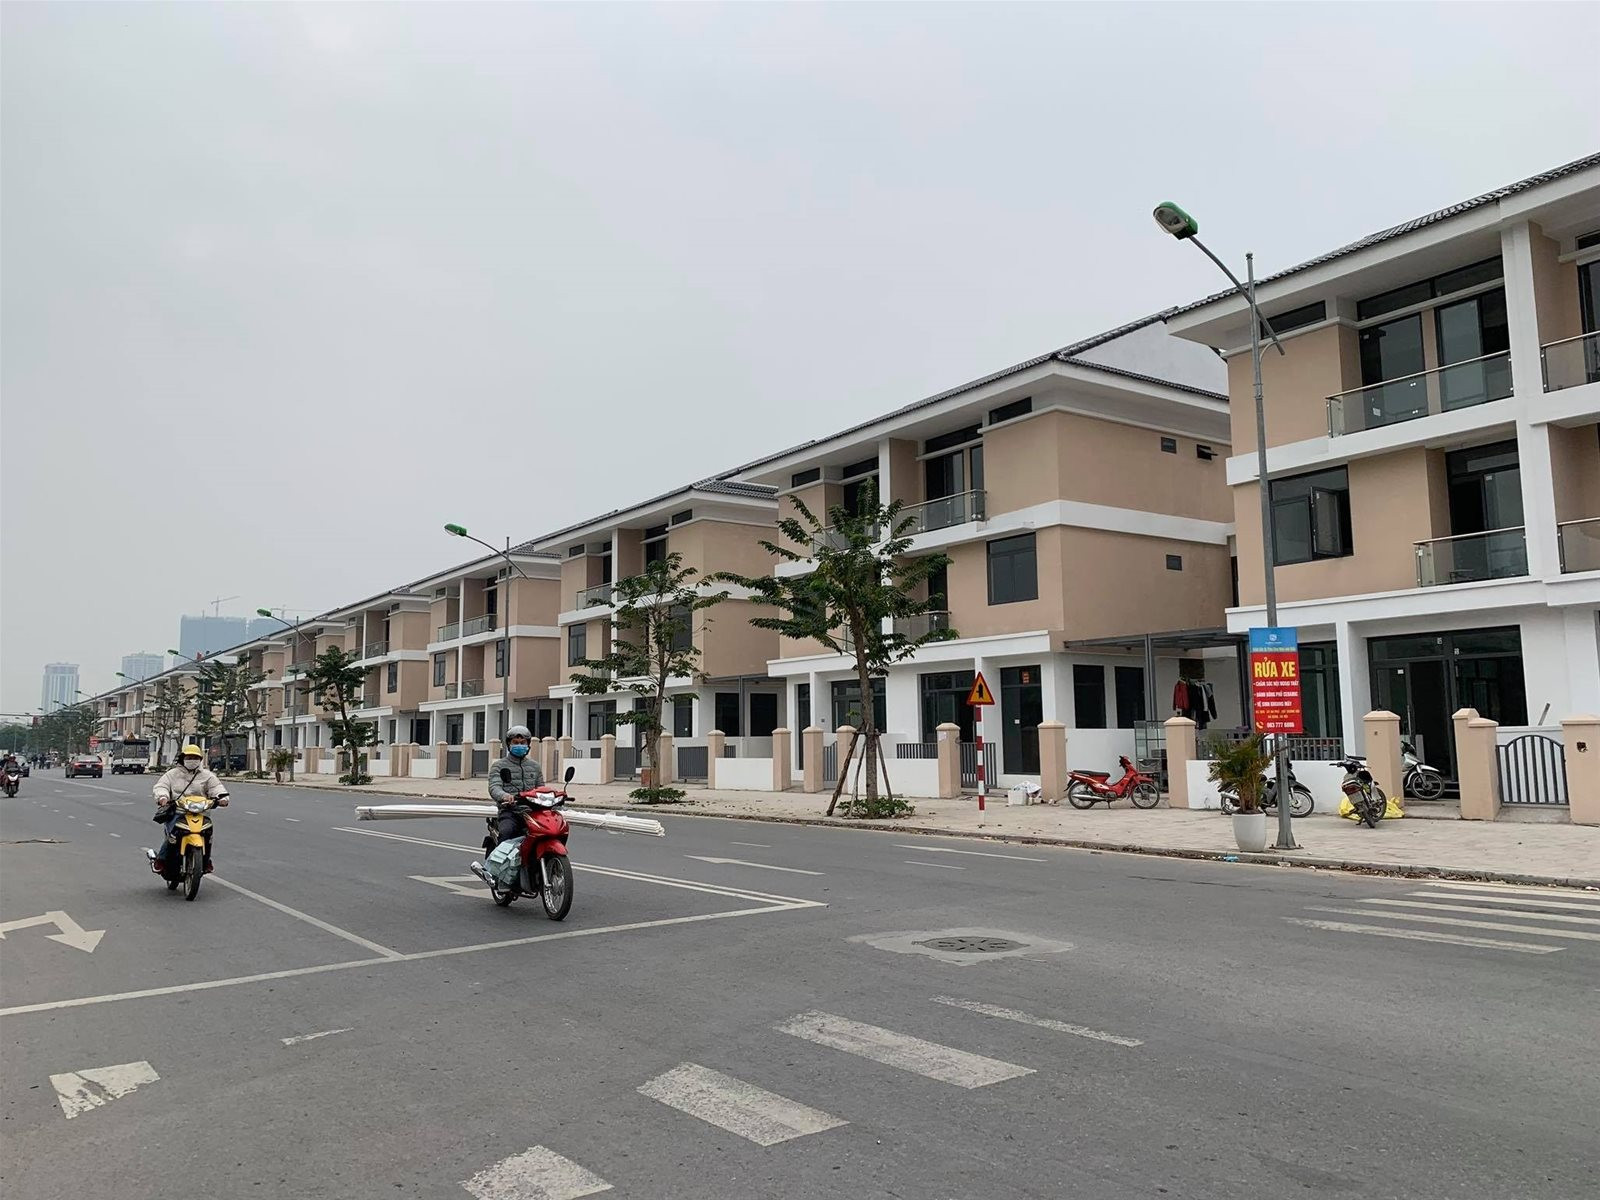 Mua shophouse Hà Nội giá 30 tỷ, cho thuê mỗi tháng vài chục triệu đồng/tháng, “giật mình” nhẩm tính tỷ suất lợi nhuận chưa đến 1% - Ảnh 14.